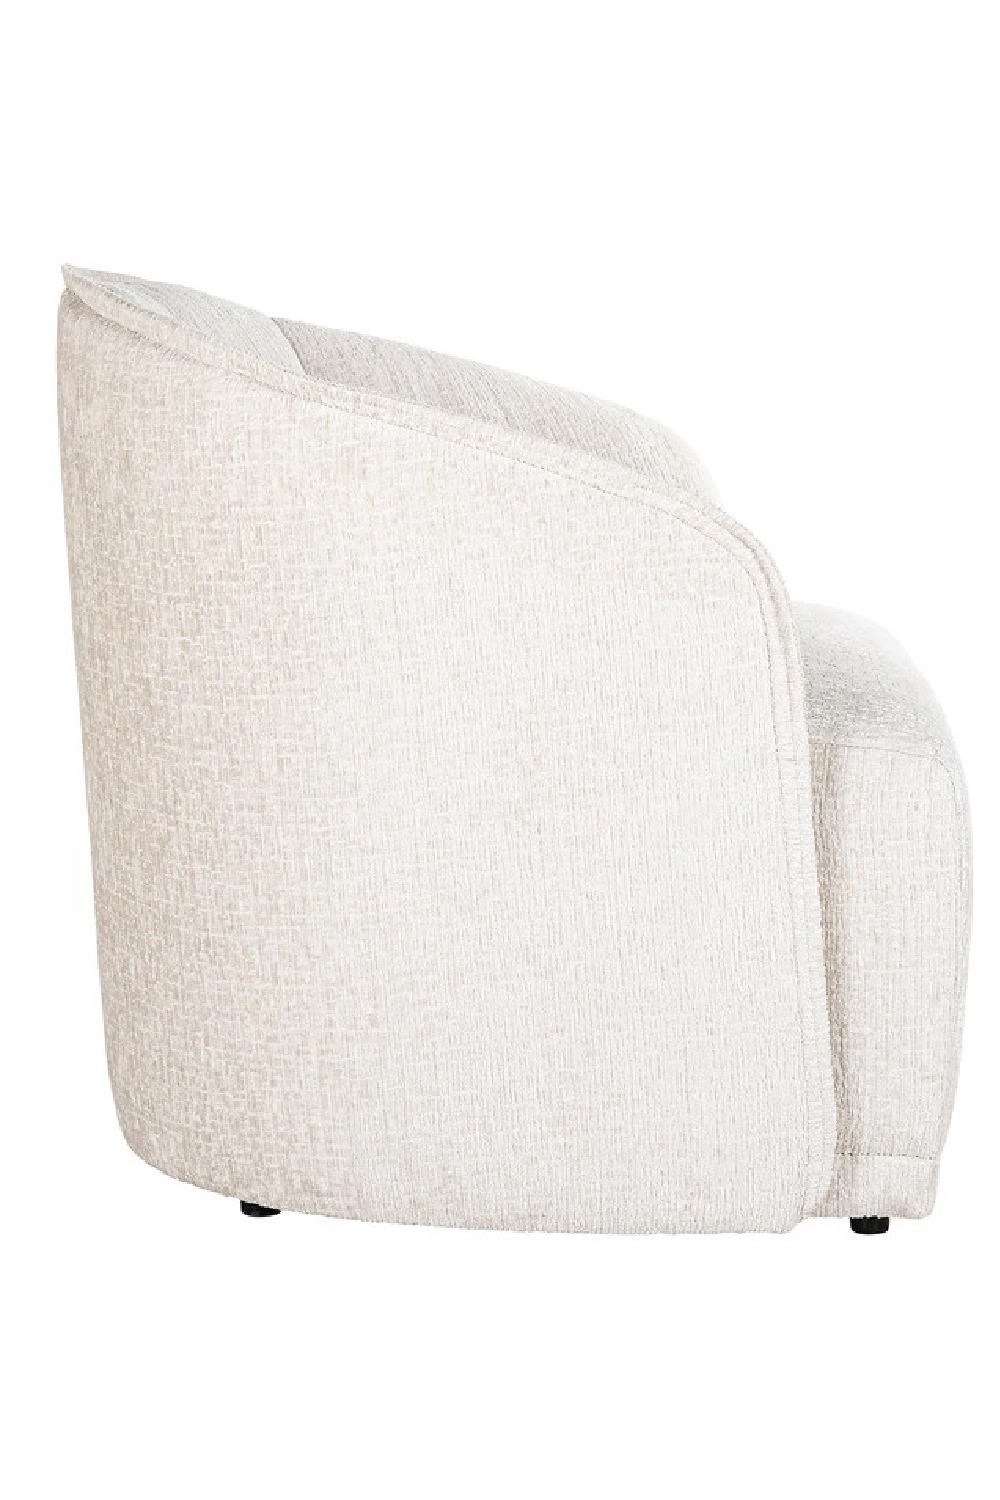 Cream Curved Accent Chair | OROA Maryse | Oroa.com